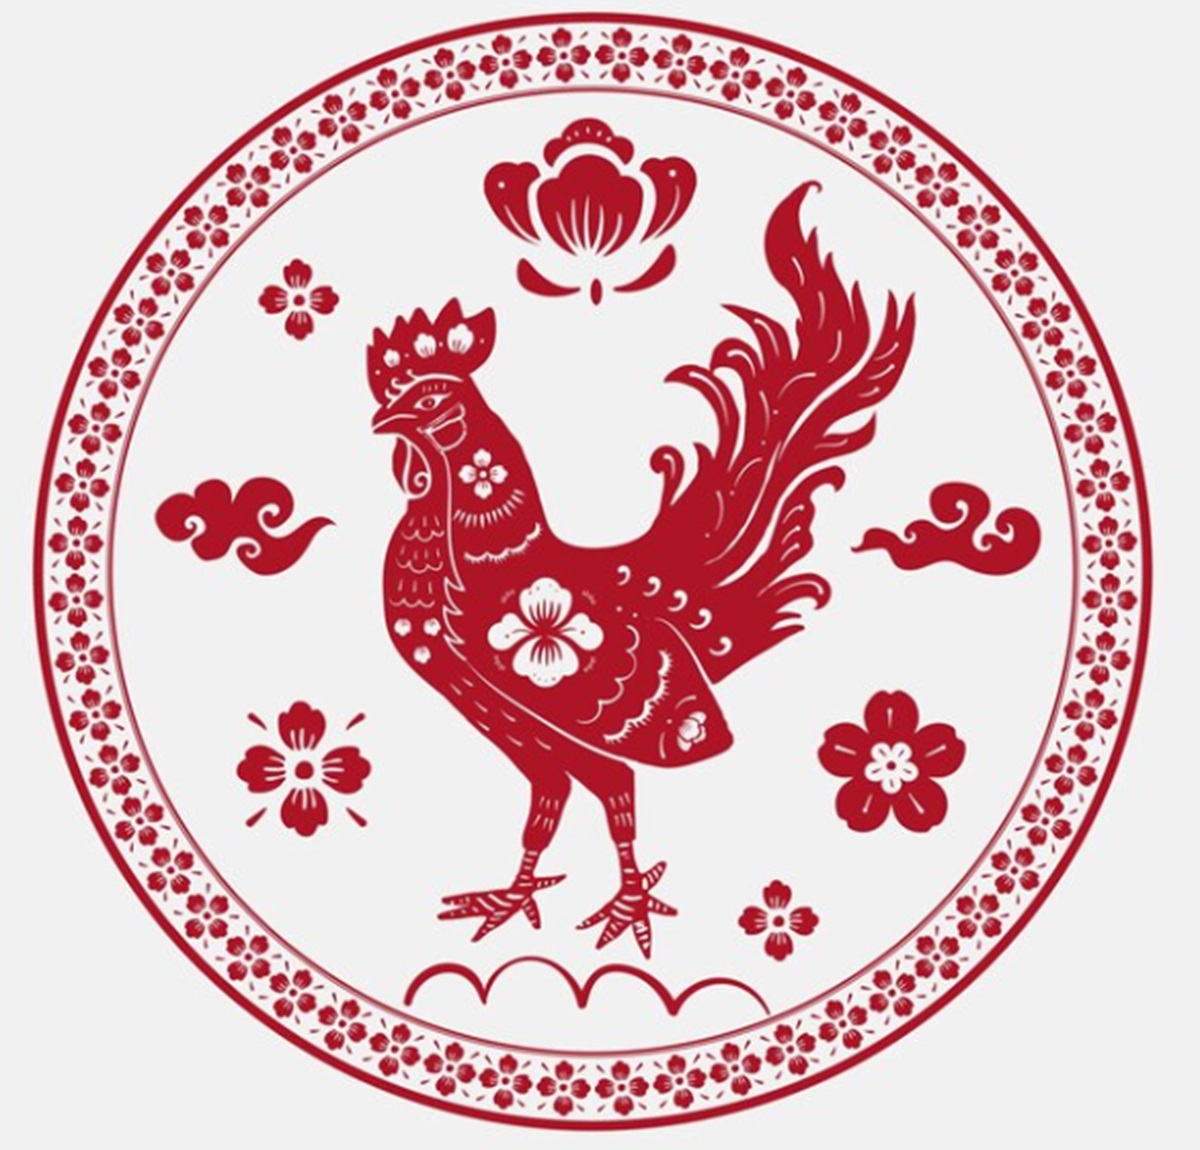  Kelebihan dan Kelemahan Shio Ayam dalam Astrologi Cina